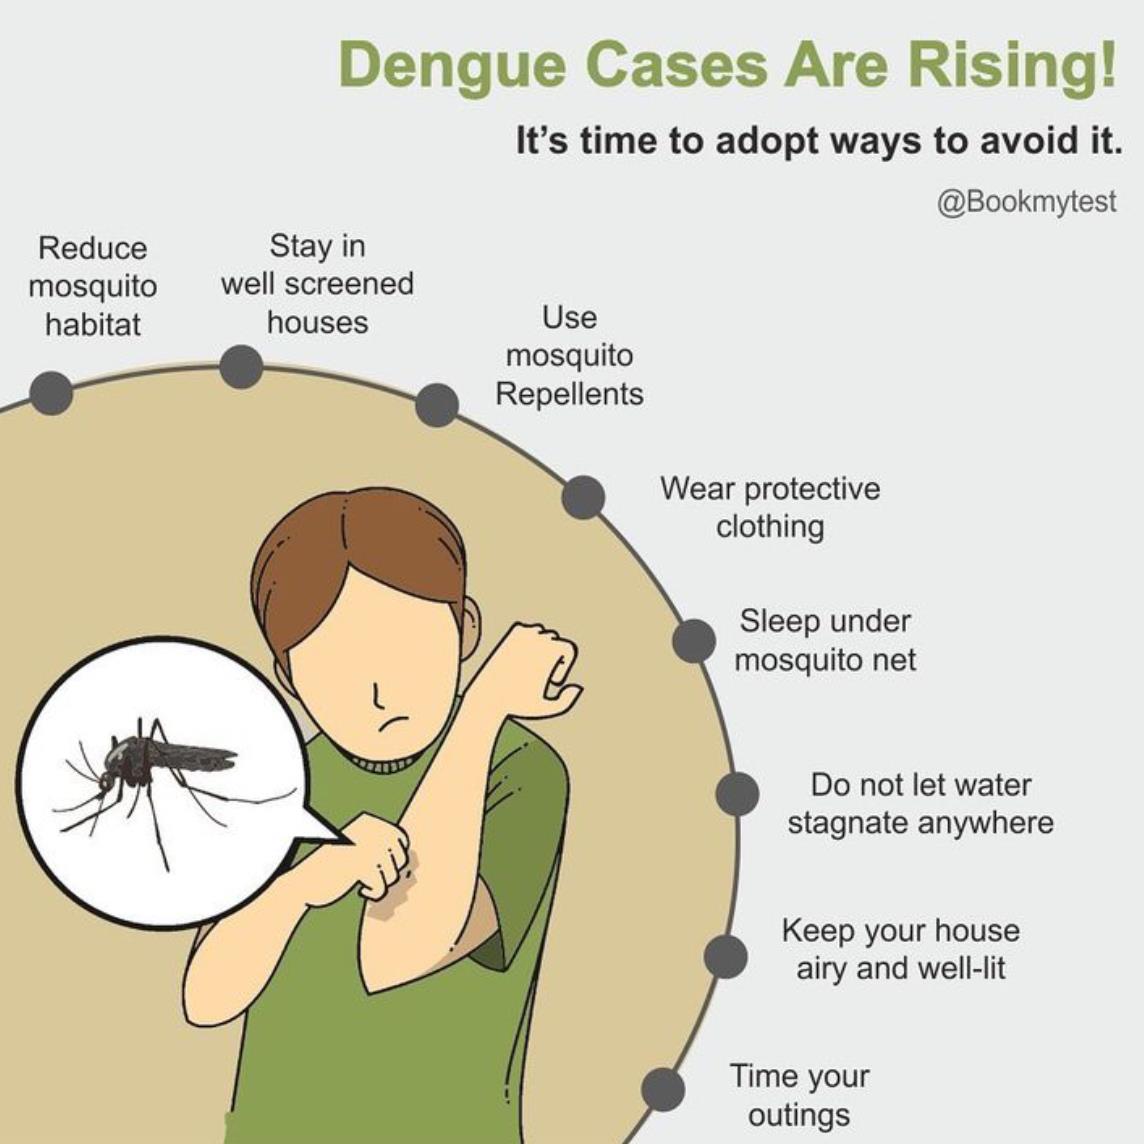 Dengue Cases Are Rising